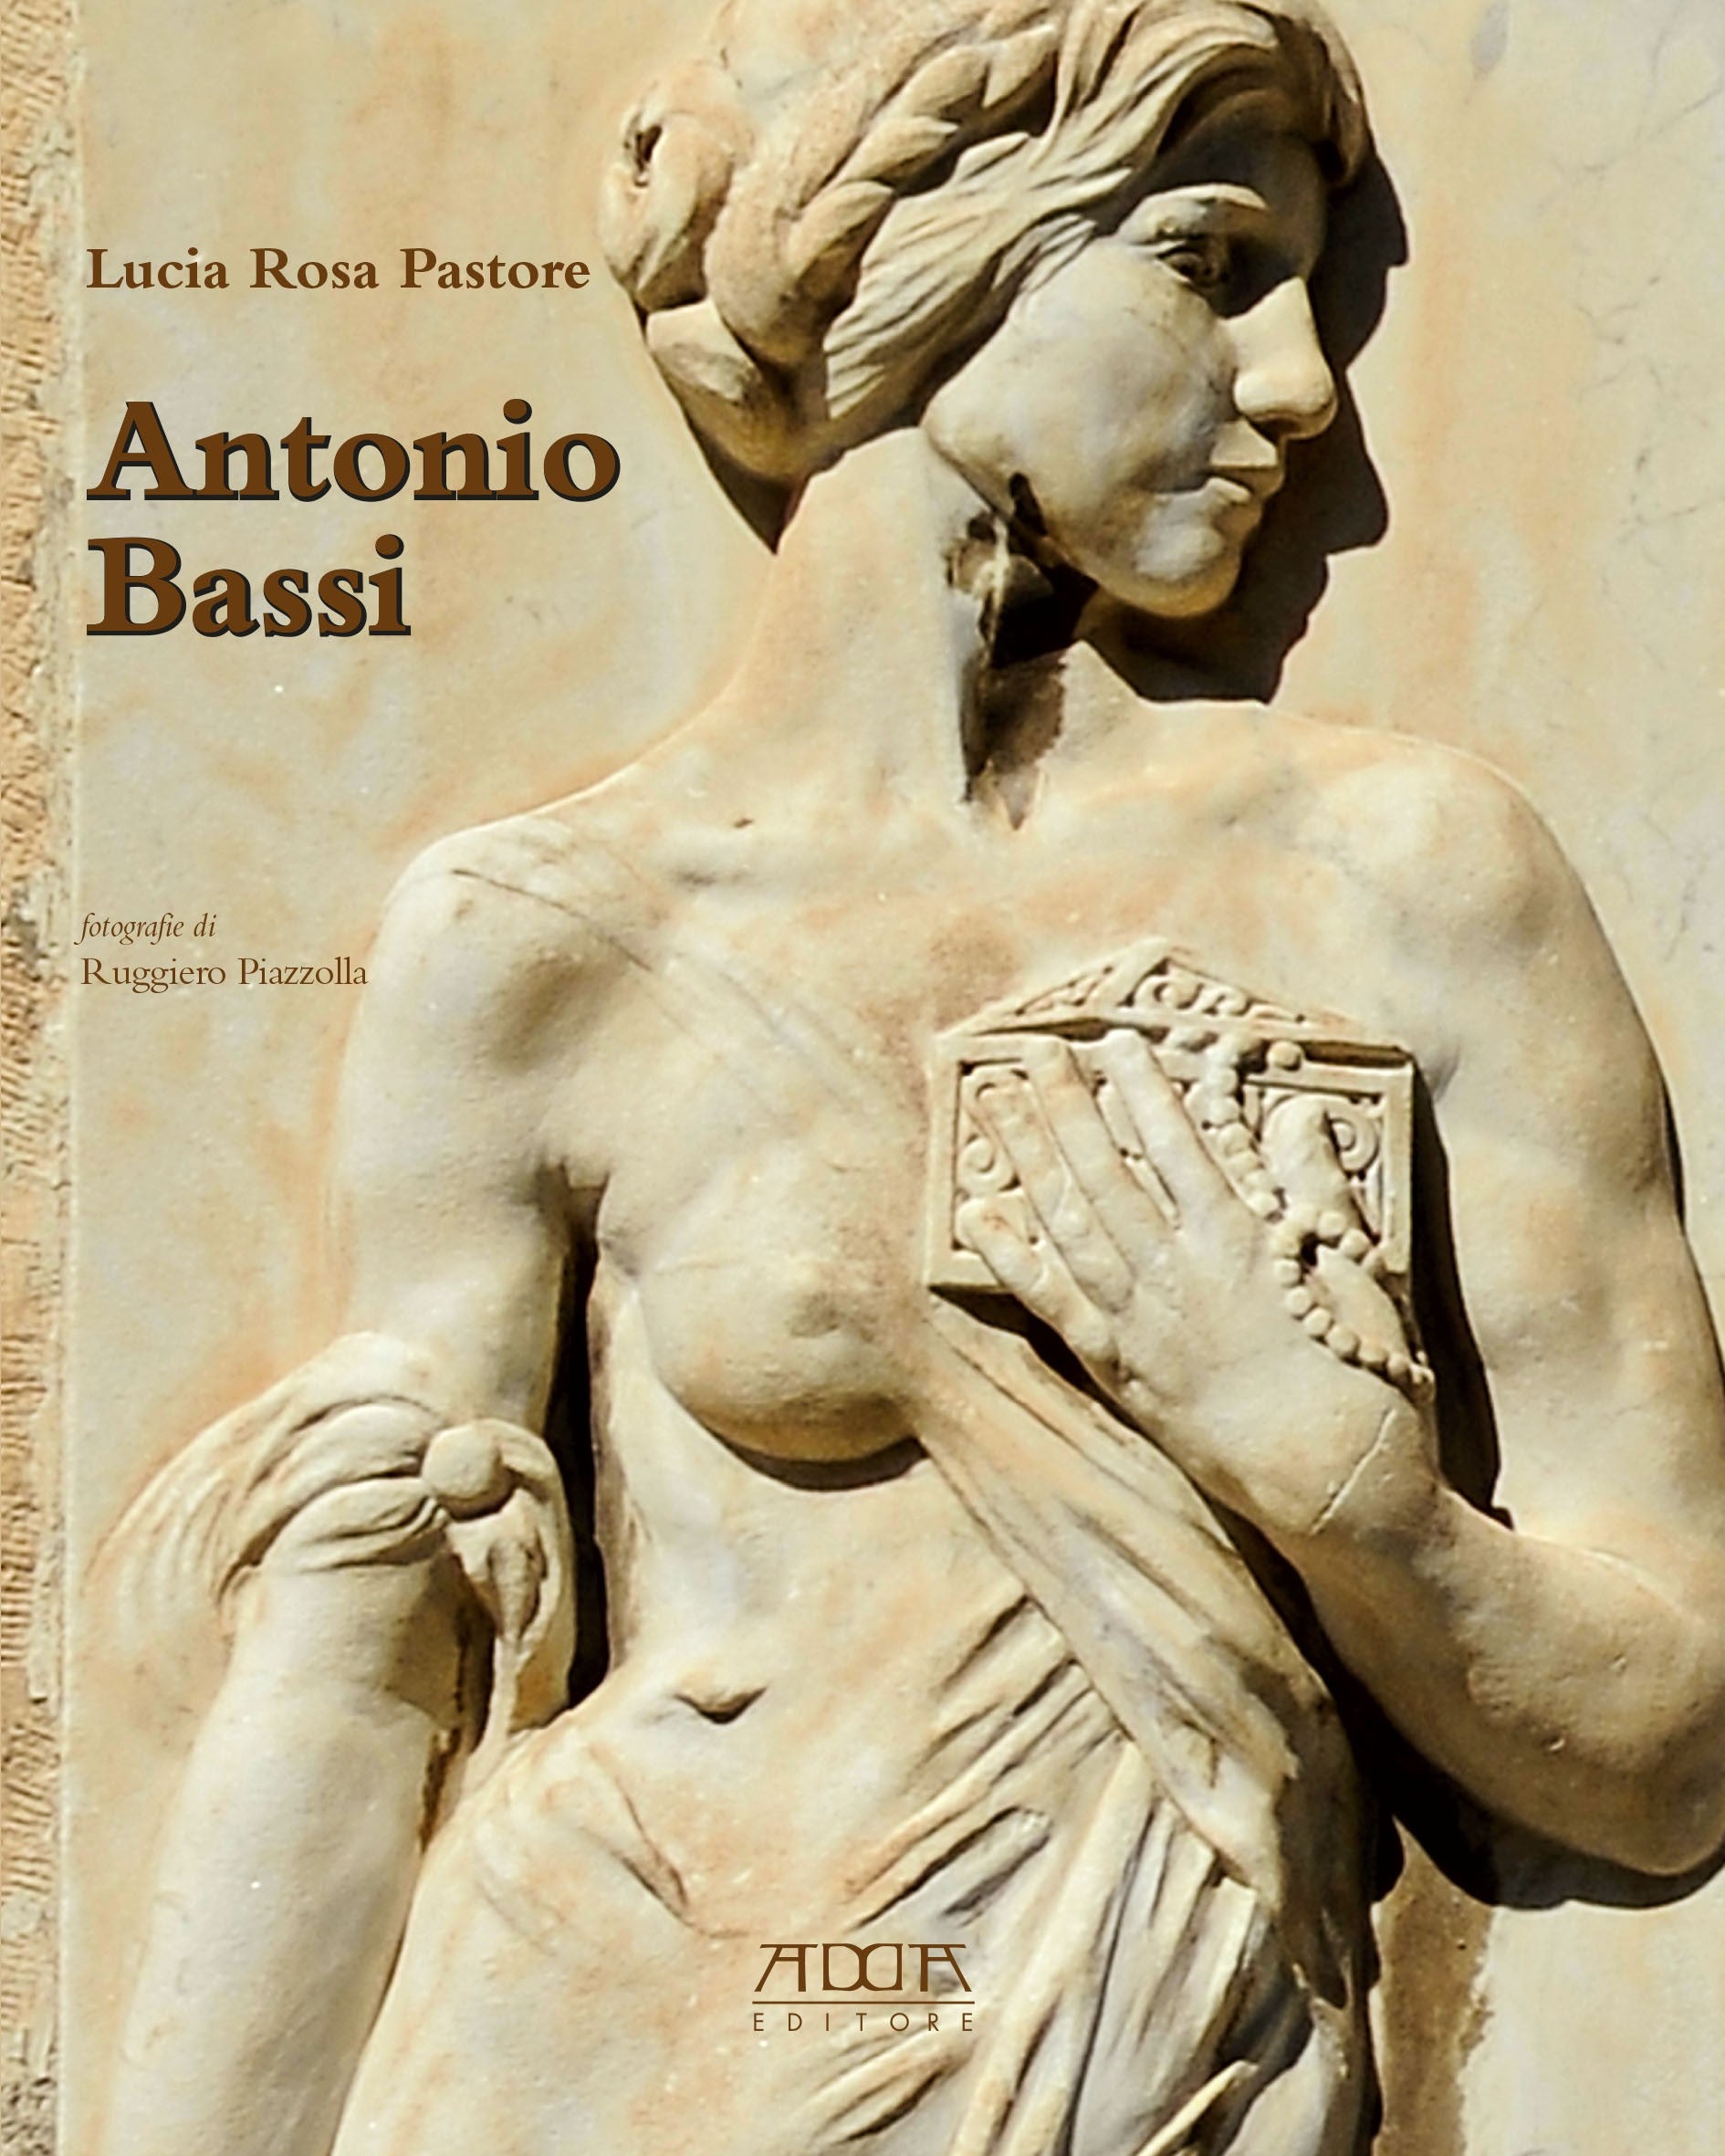 Antonio Bassi (1889-1965)